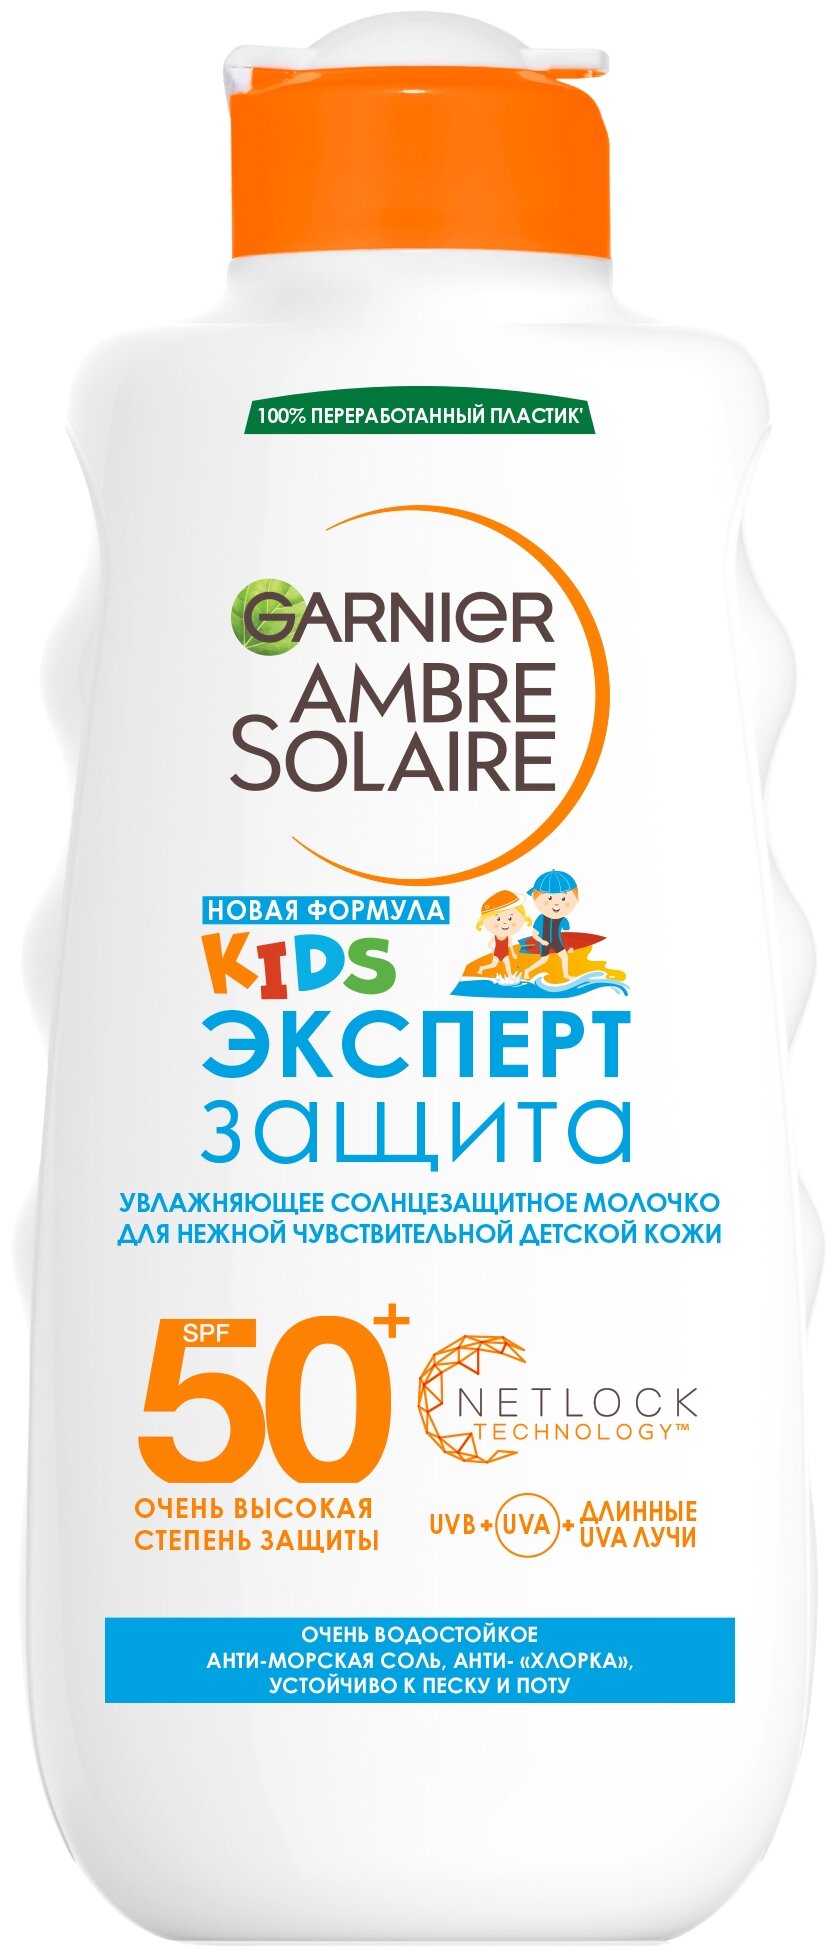 GARNIER Ambre Solaire детское увлажняющее солнцезащитное молочко для чувствительной кожи Эксперт Защита SPF 50+, 200 мл, 200 г